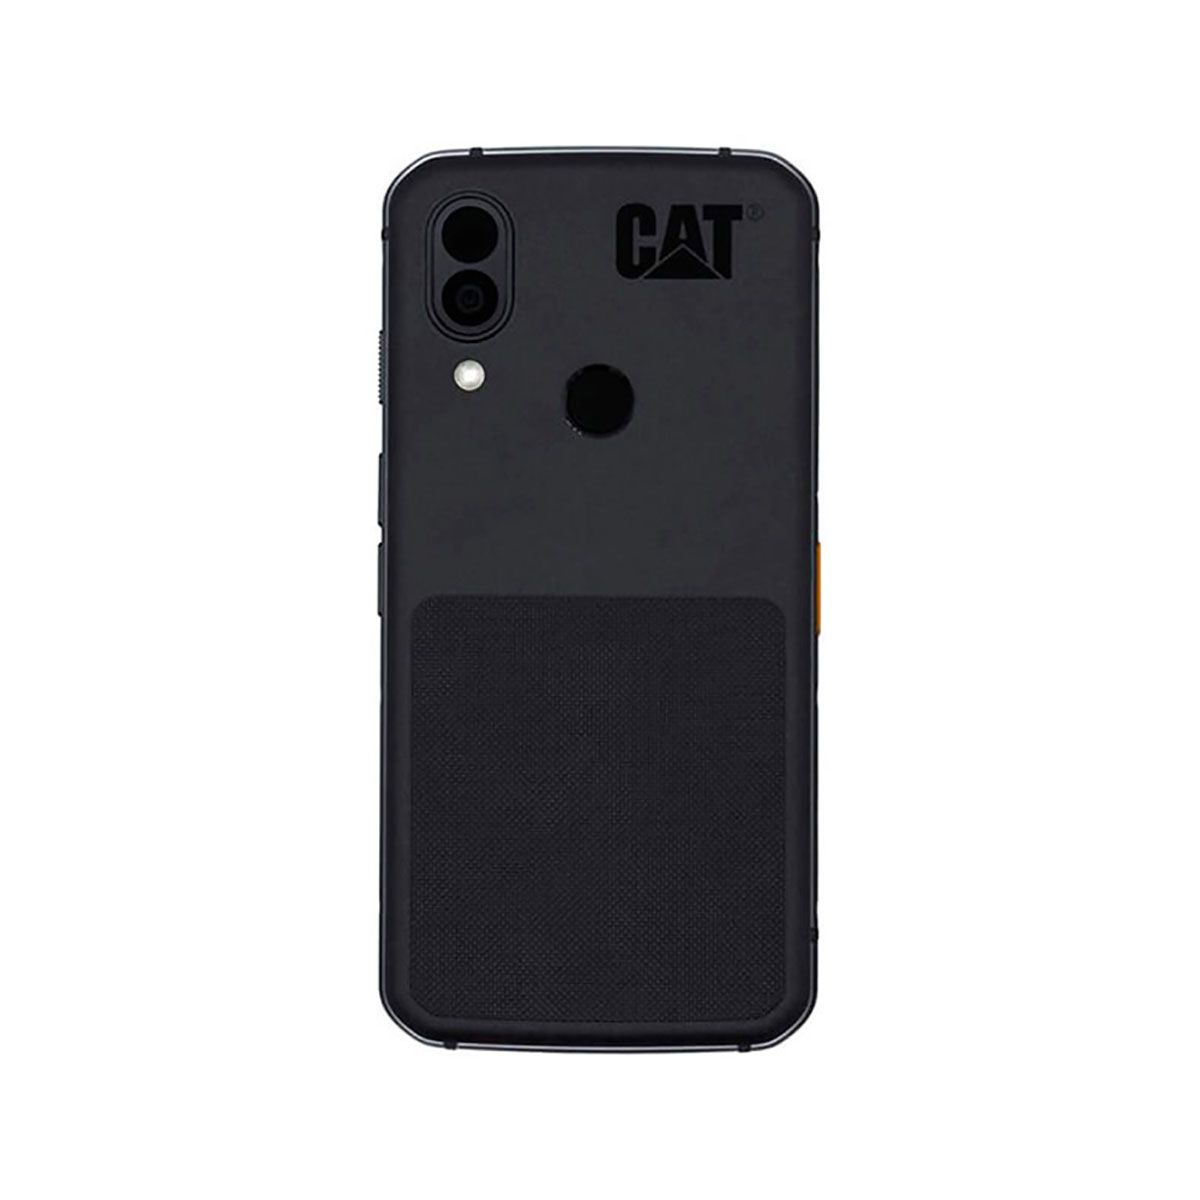 Caterpilar CAT S62 Pro 6GB/128GB Black (Black) Dual SIM